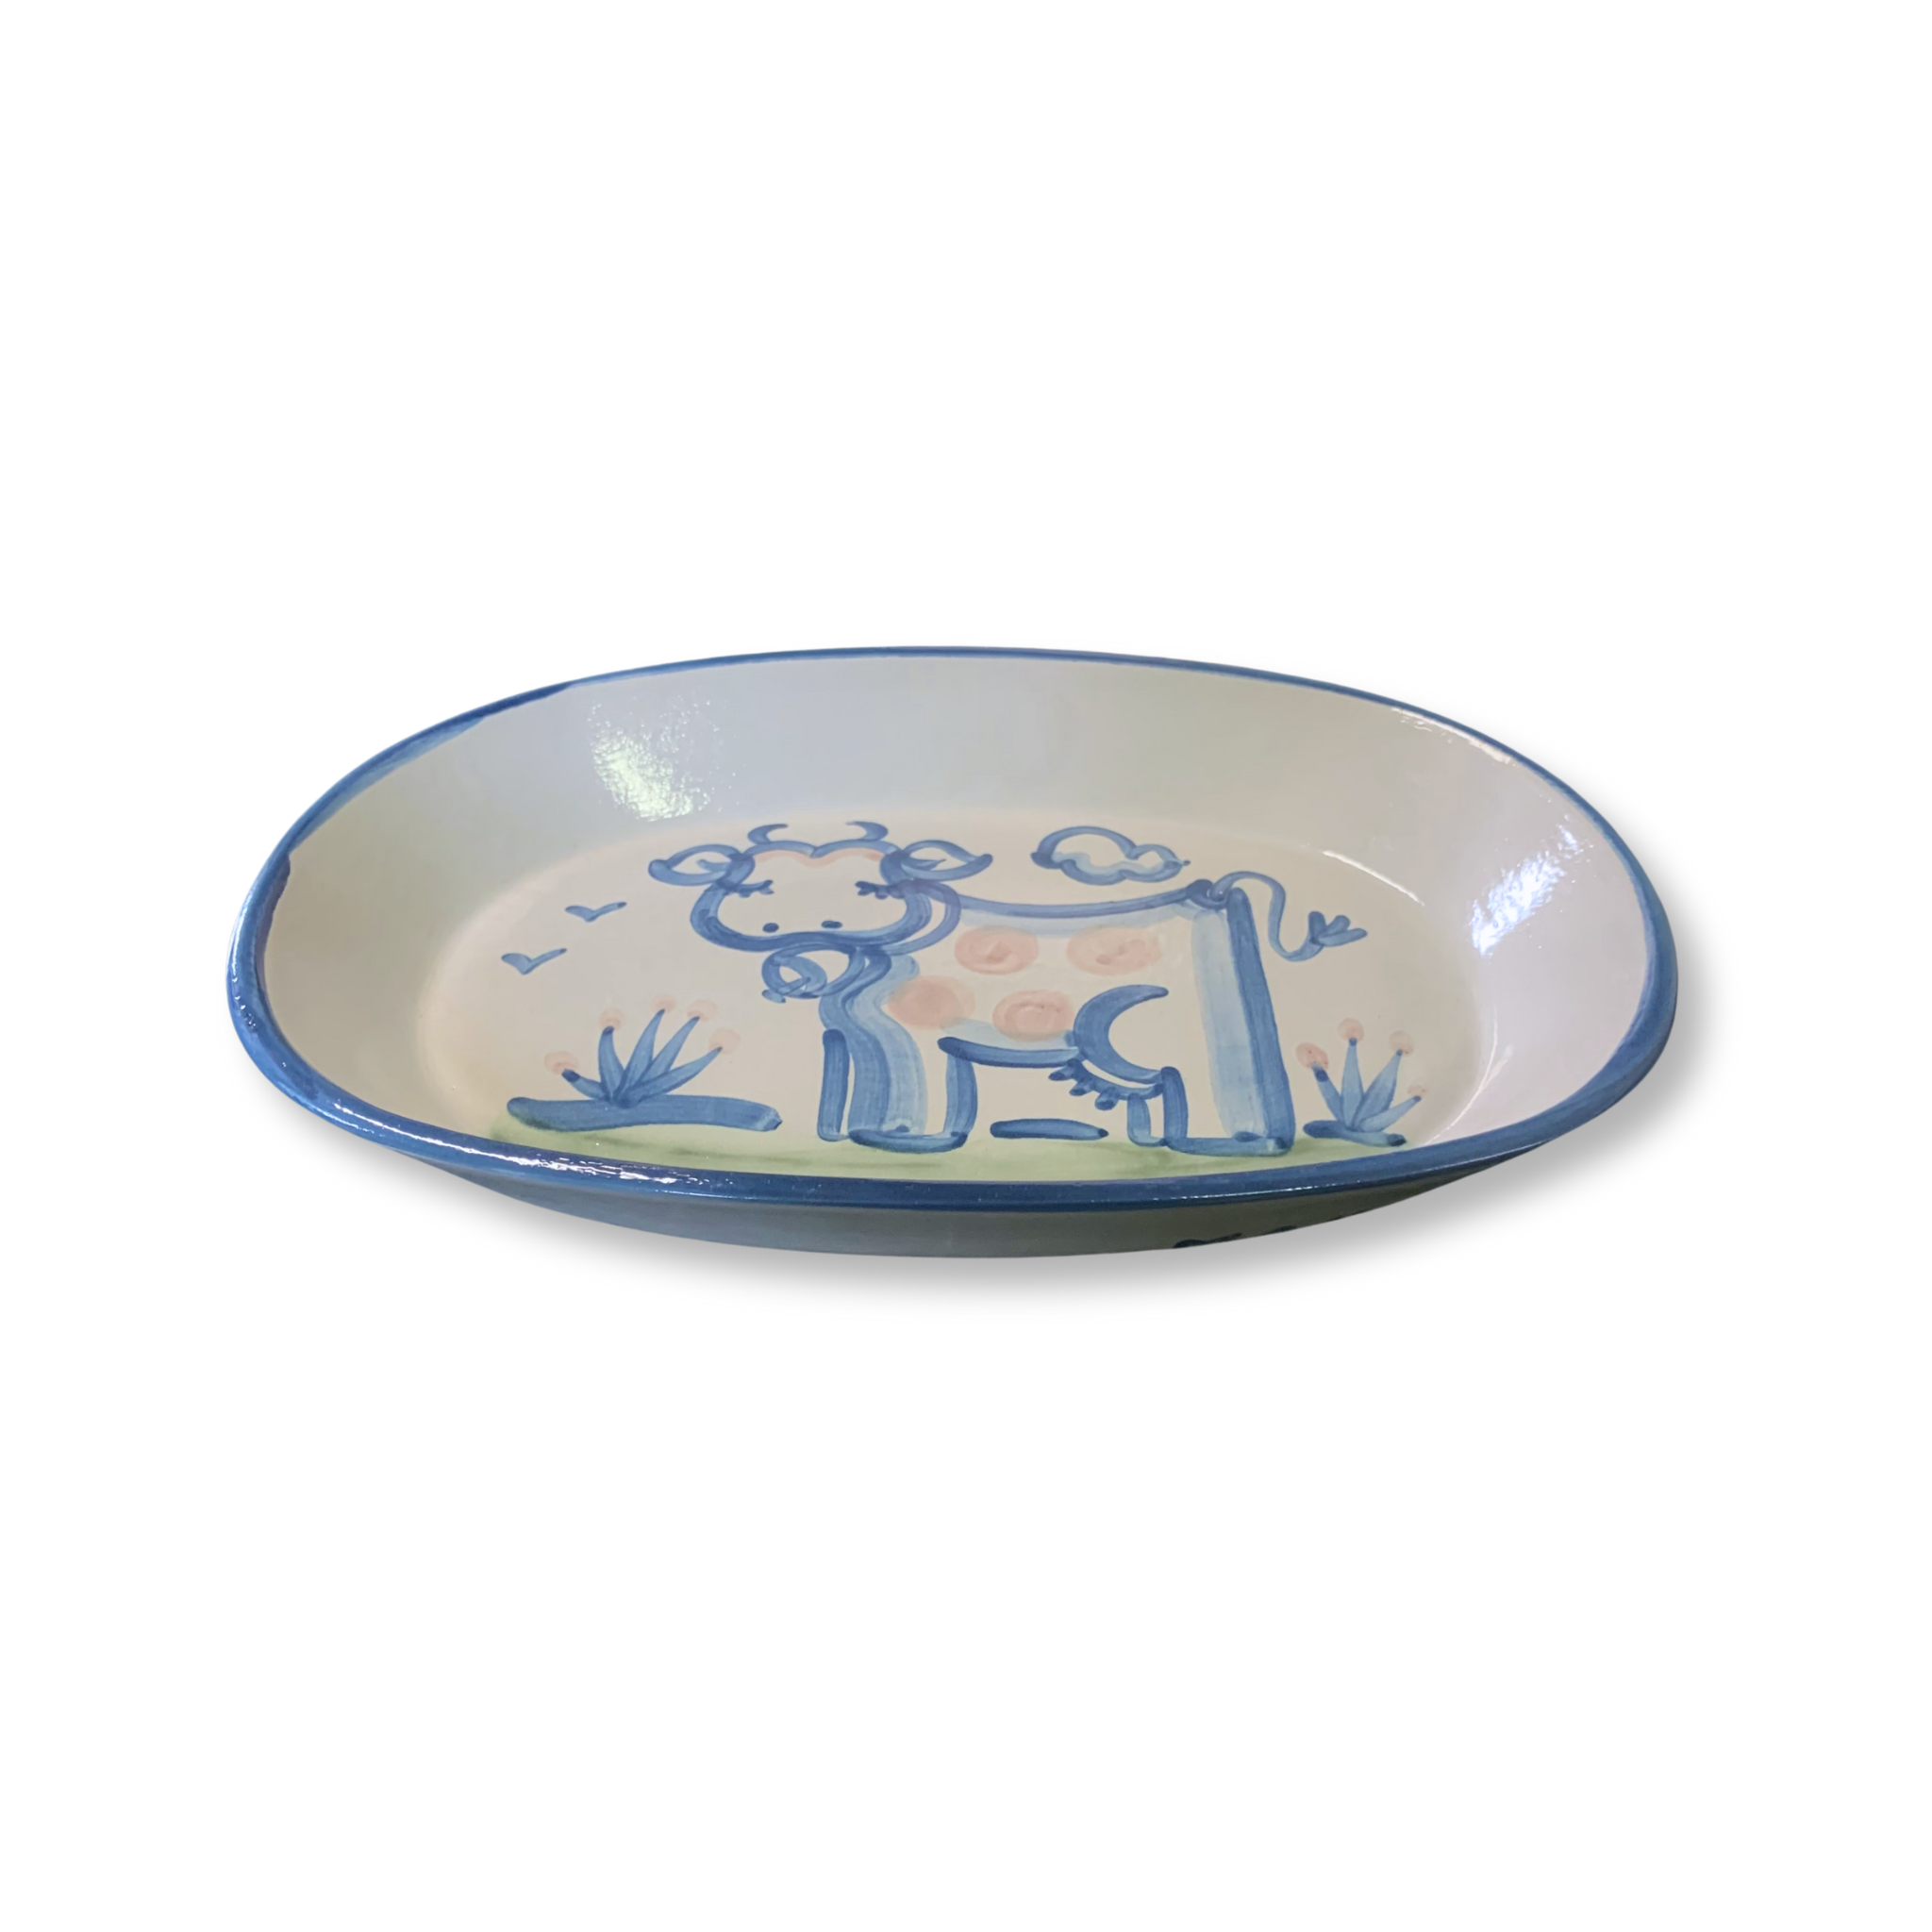 Medium Oval Platter - Cow